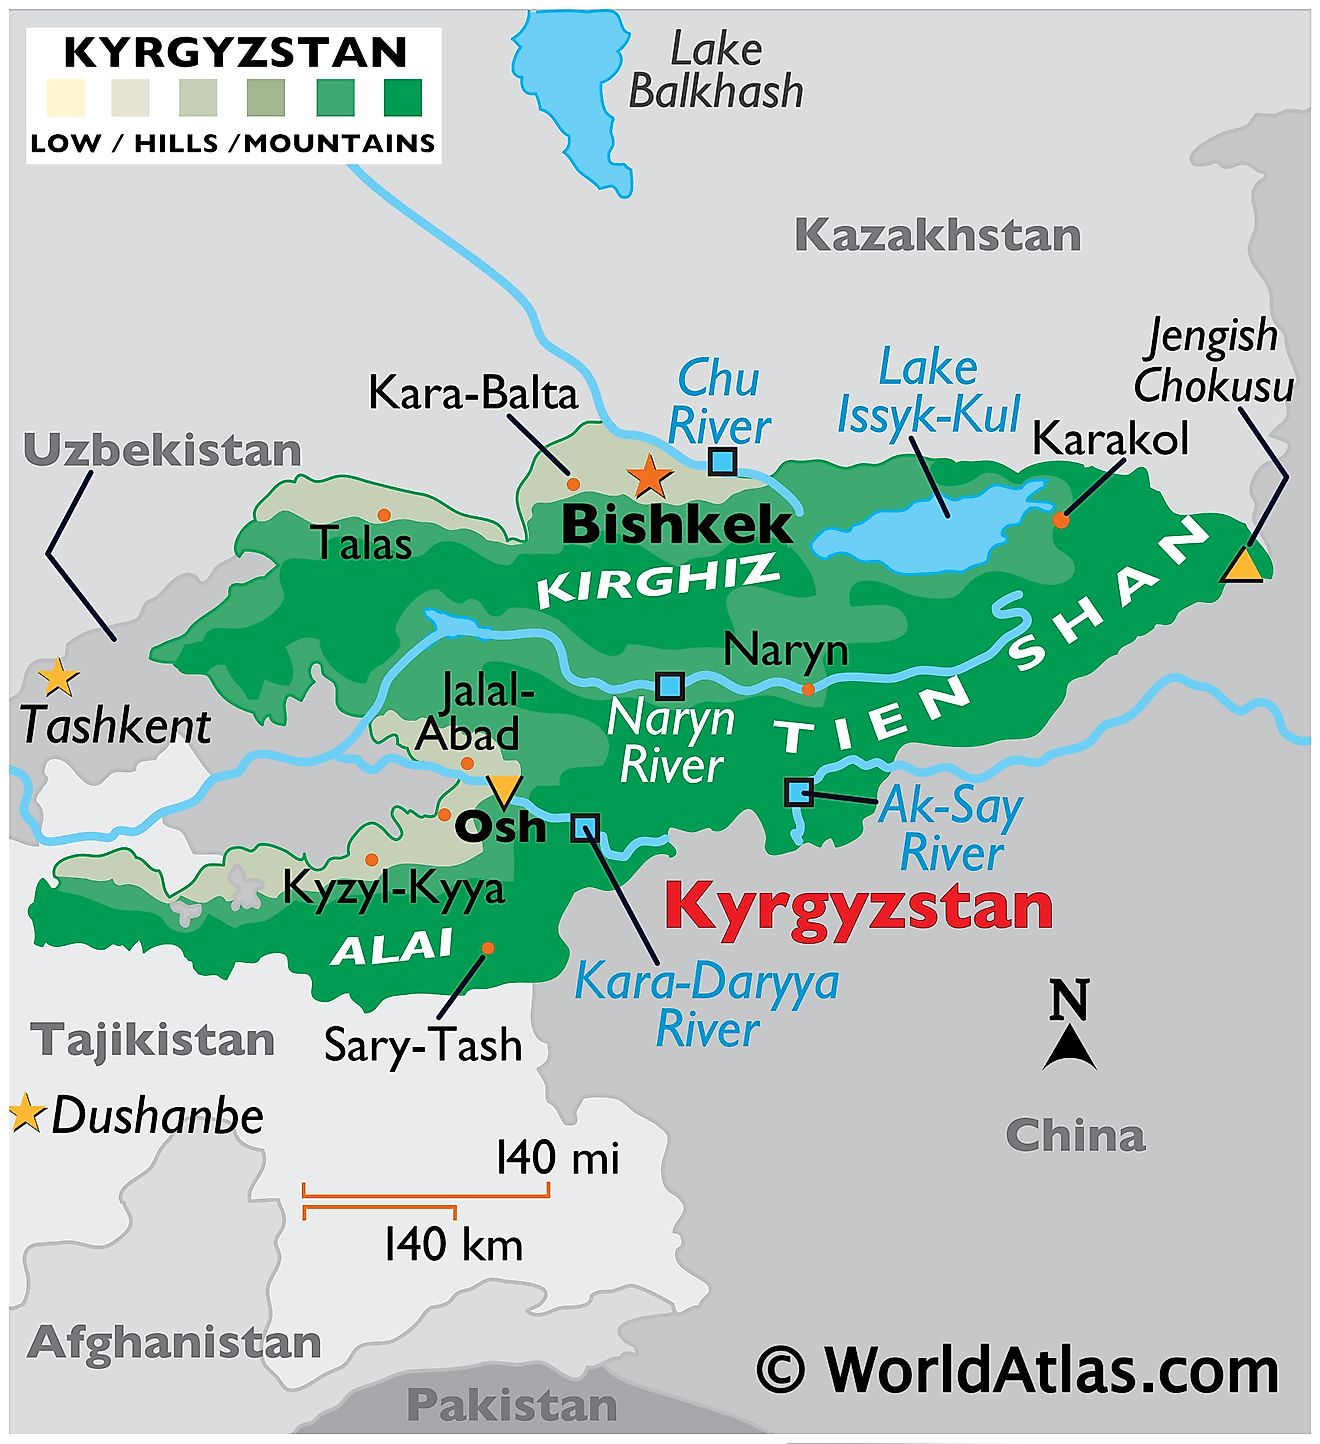 Mapa físico de Kirguistán que muestra el relieve, los puntos más altos y más bajos, las principales cadenas montañosas, los ríos, los centros urbanos importantes, etc.